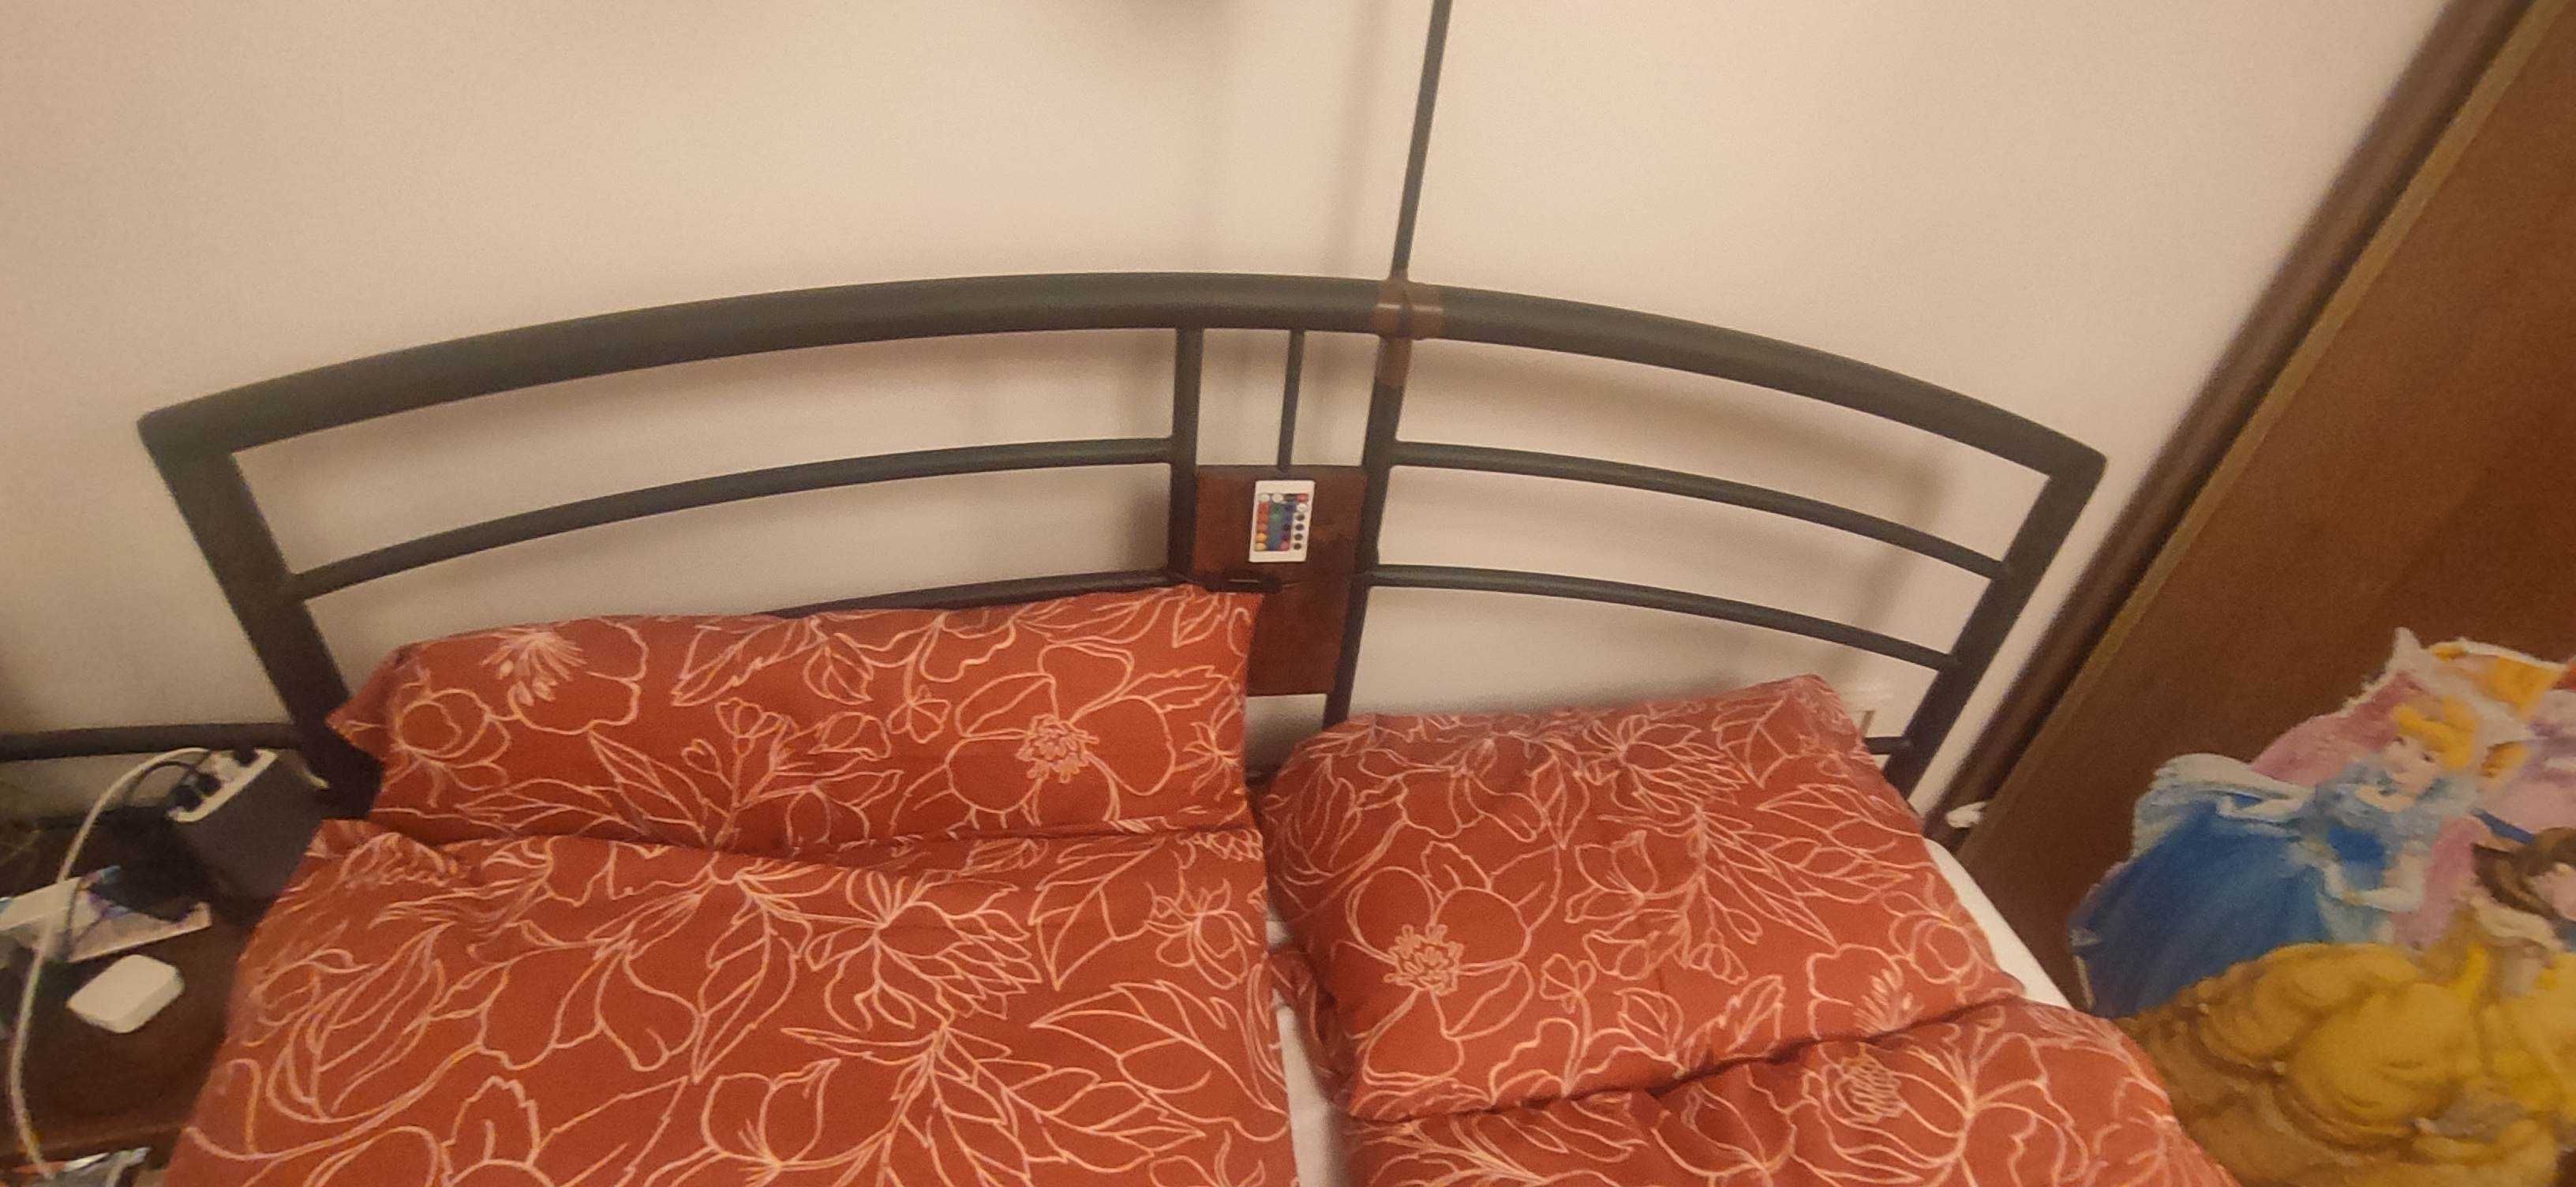 Łóżko metalowe z materacem 160 cm X200 cm Rybnik